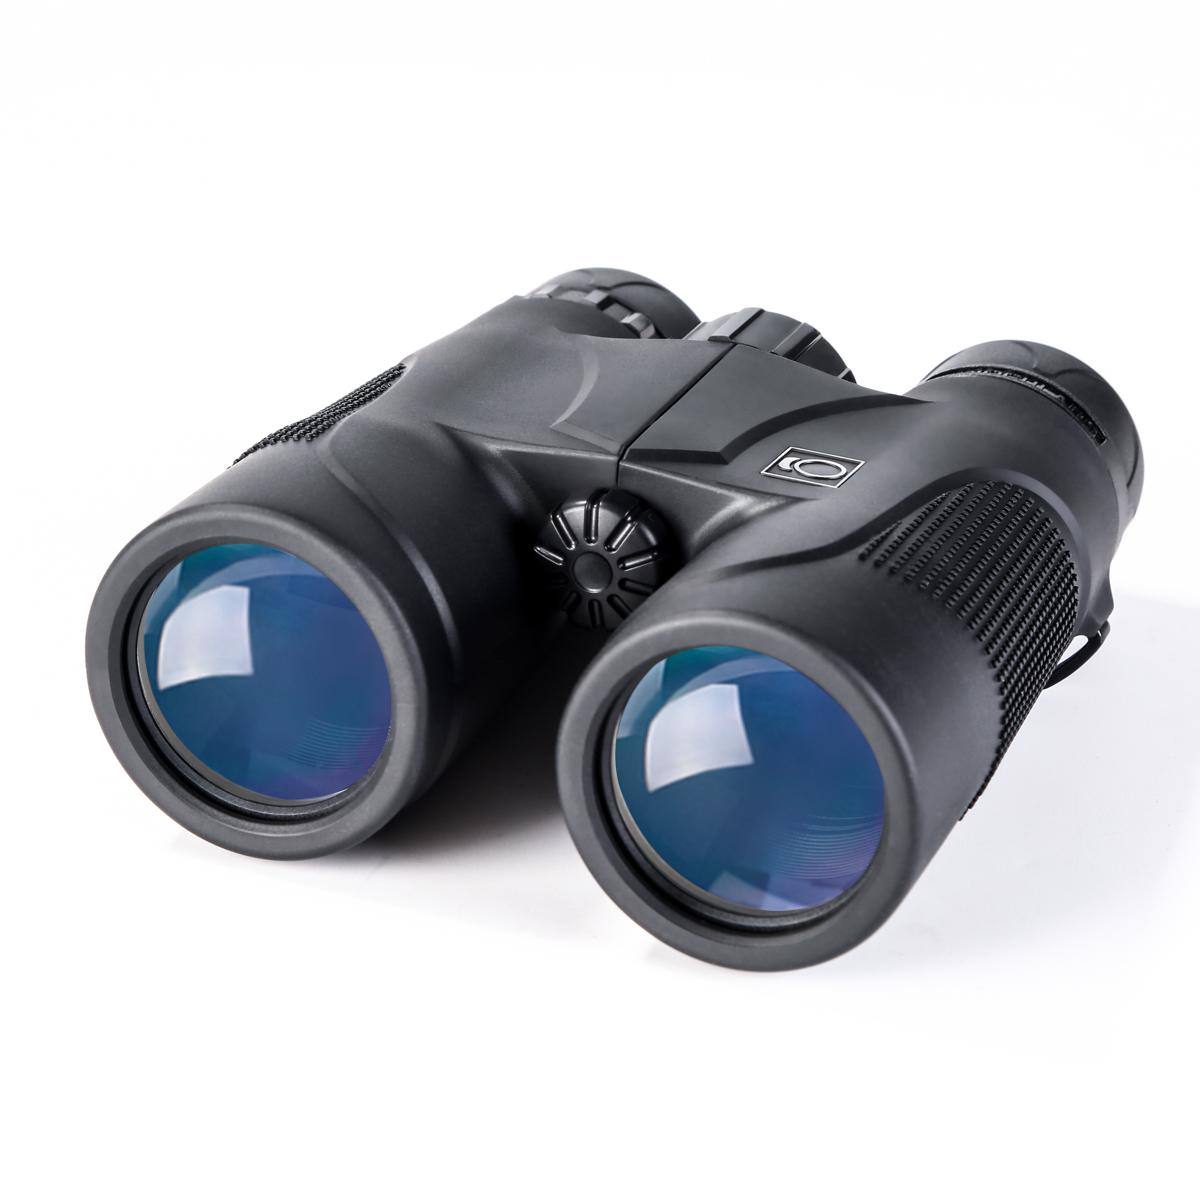 DAXGD 8x35 Binoculars Folding Wide Angle Binoculars with